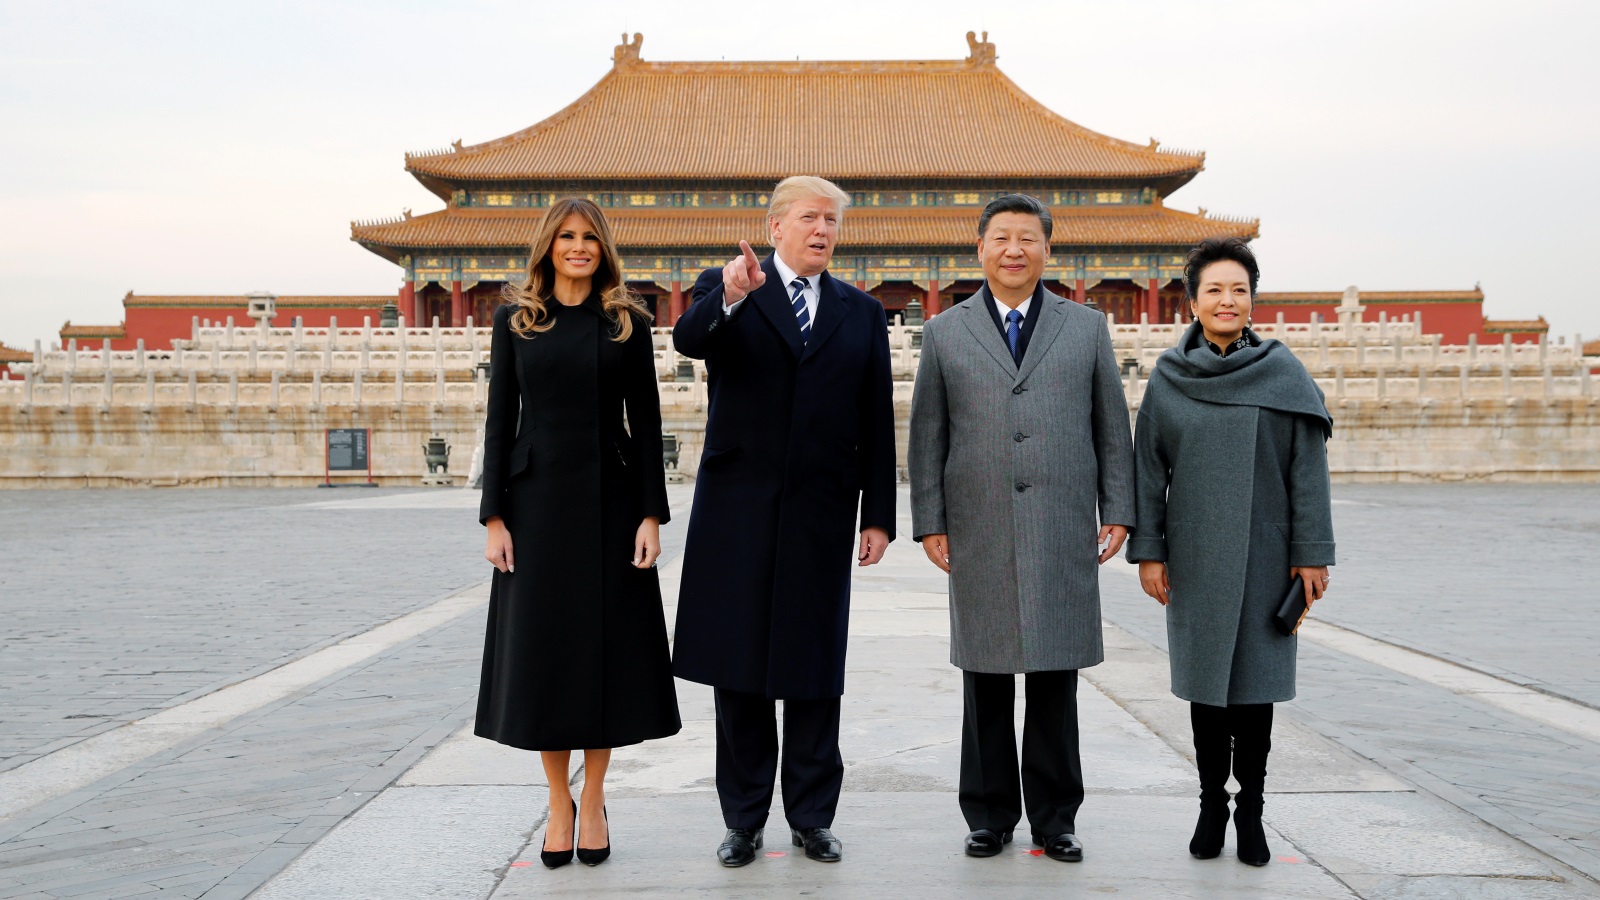 ‪الرئيسان الصيني والأميركي وزوجتاهما أثناء زيارة المدينة المحرمة‬ الرئيسان الصيني والأميركي وزوجتاهما أثناء زيارة المدينة المحرمة (رويترز)